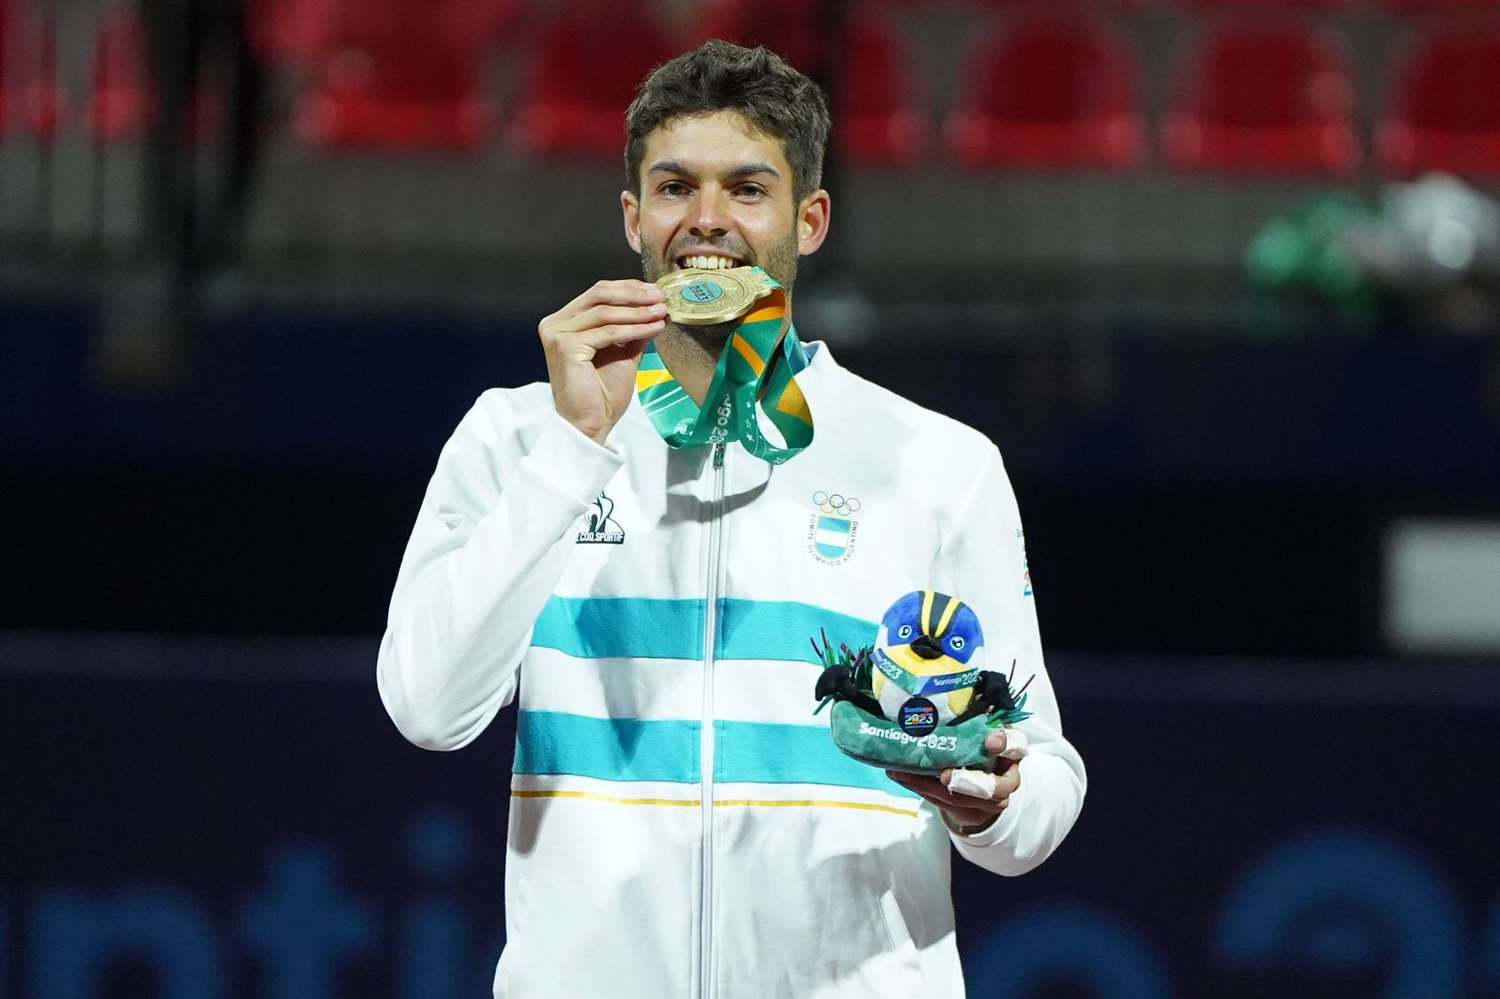 Importante aporte del tenis para el medallero argentino